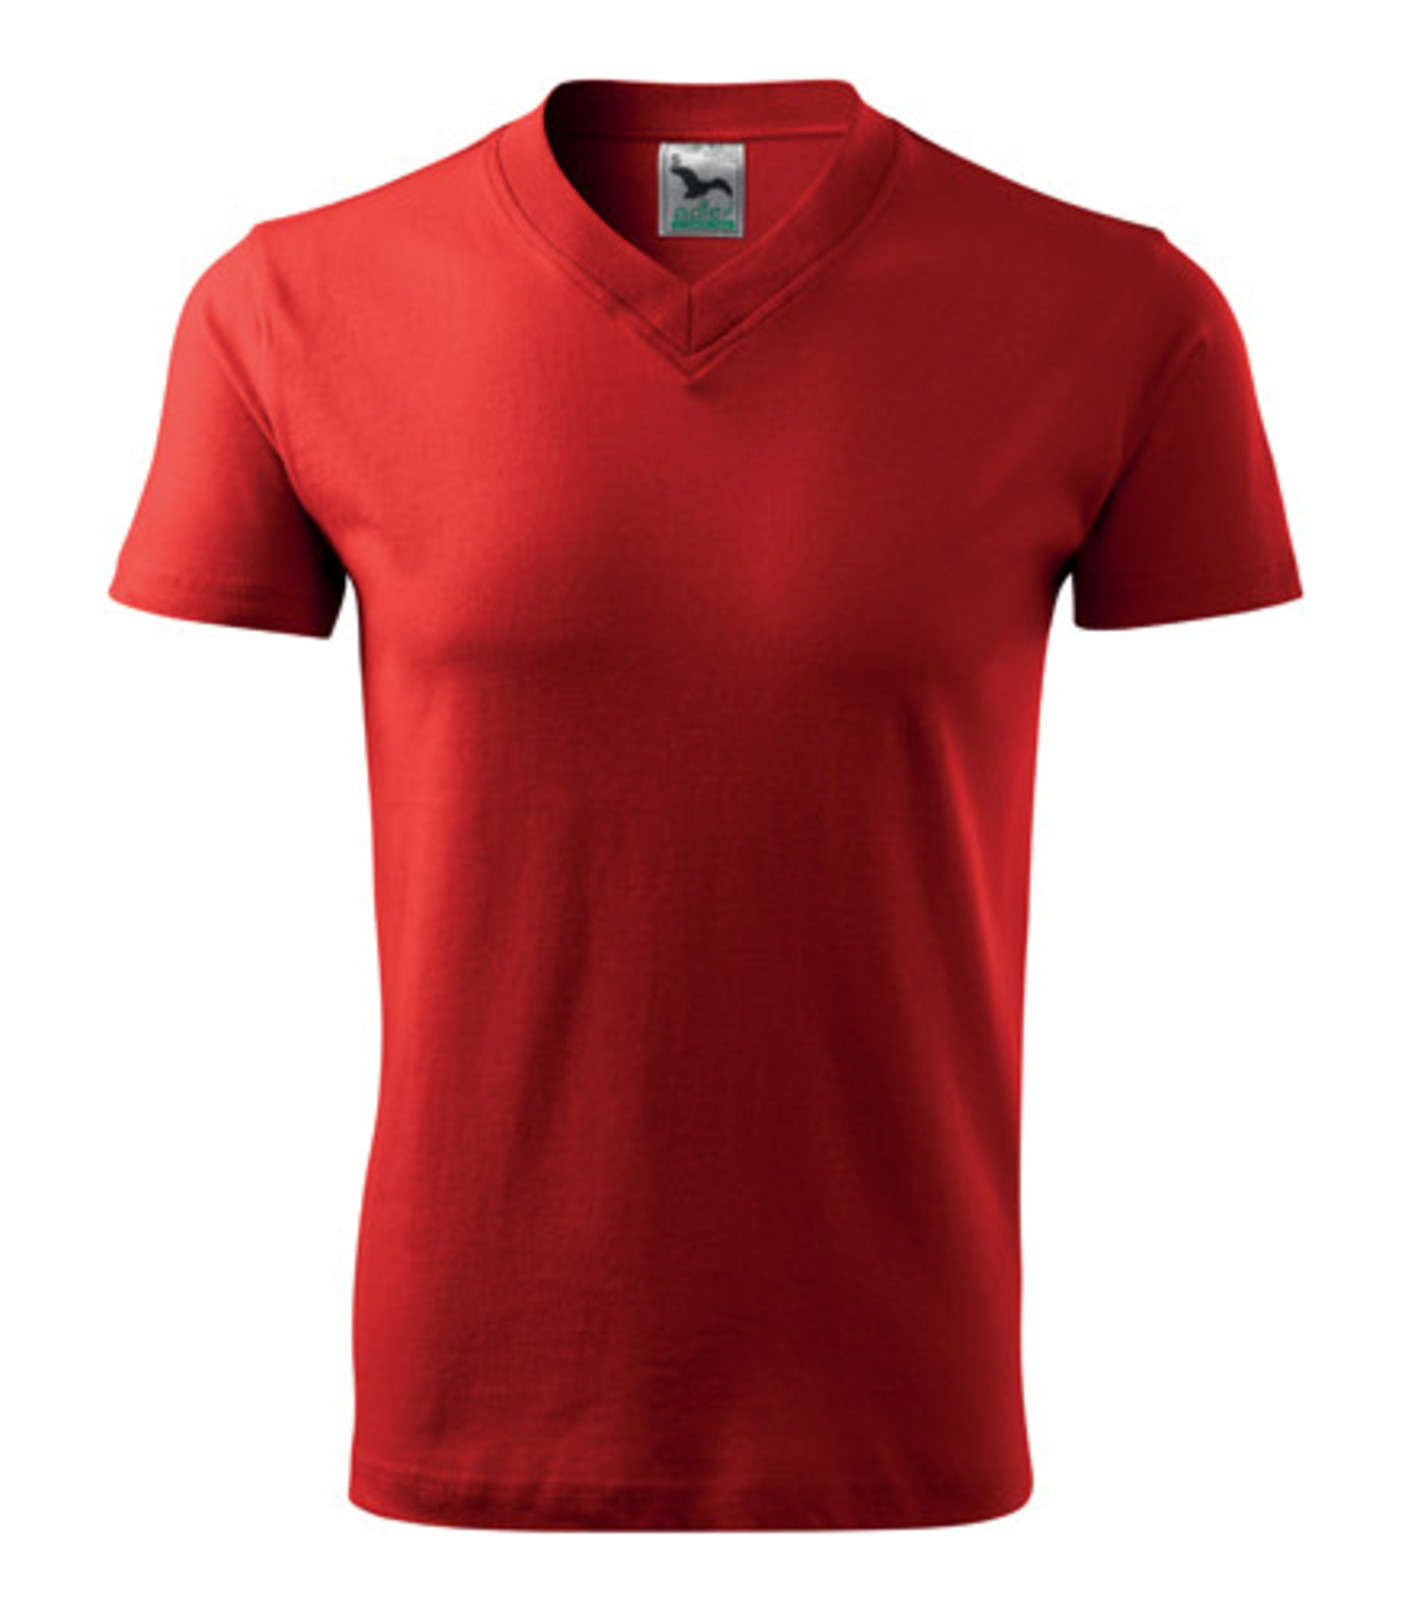 Unisex tričko s výstrihom Adler V-Neck 102 - veľkosť: S, farba: červená